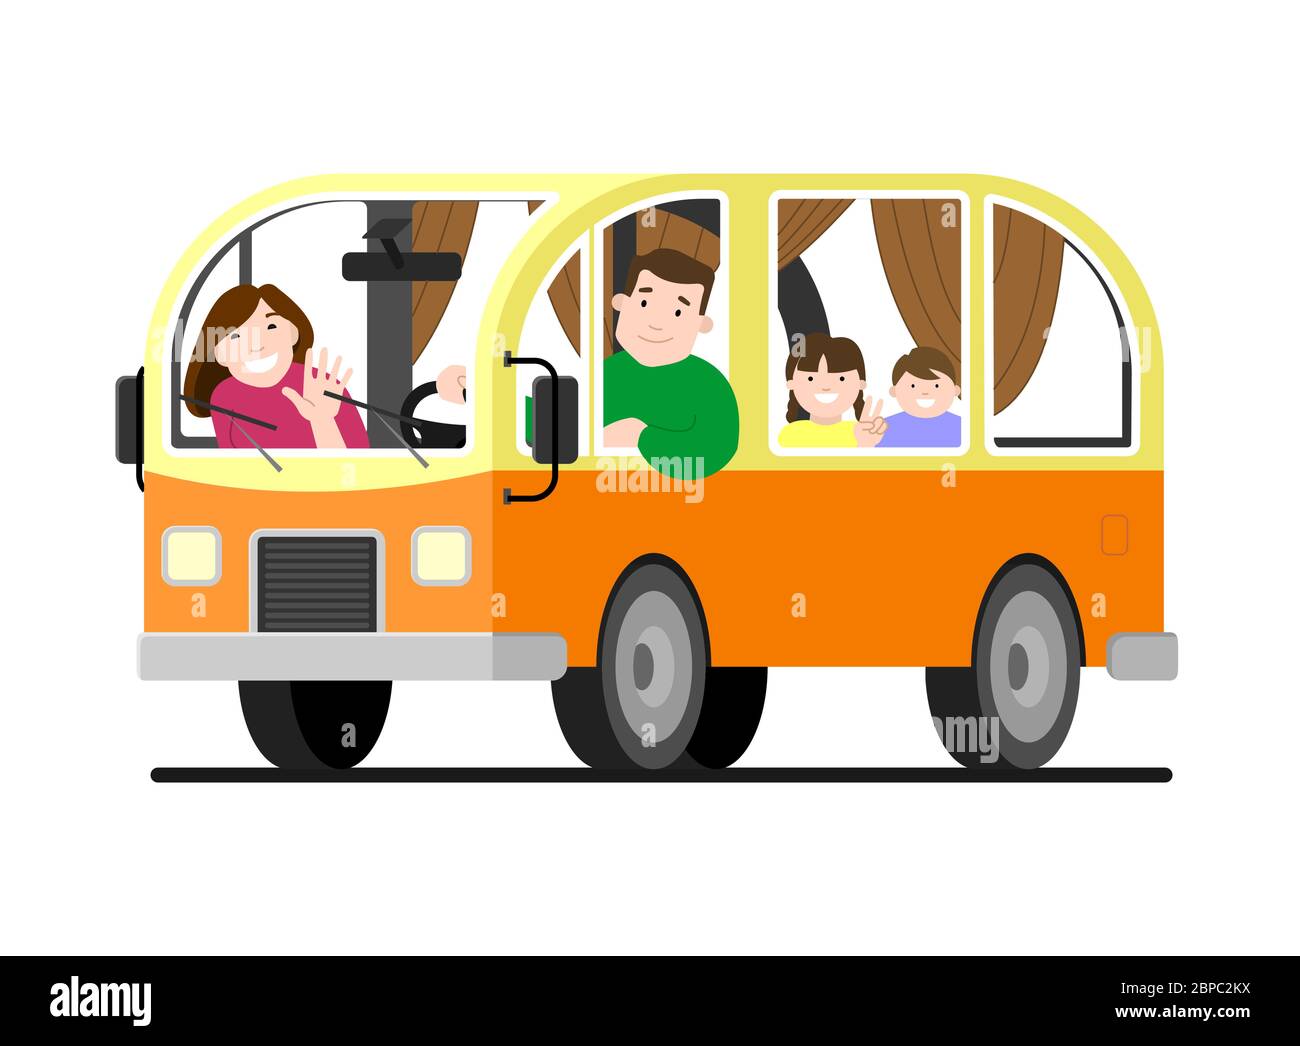 Eine Familienreise im Kleinbus; Vater fährt, Mutter, Kinder; Camping. Glücklich Cartoon Menschen Kinder in einem Retro-Minivan. Roadtrip, Sommerurlaub. Stock Vektor